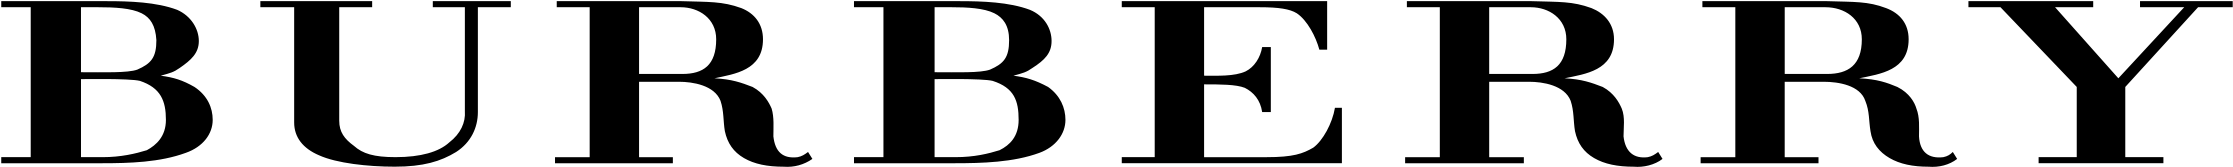 Burberry logo PNG imagen fondo